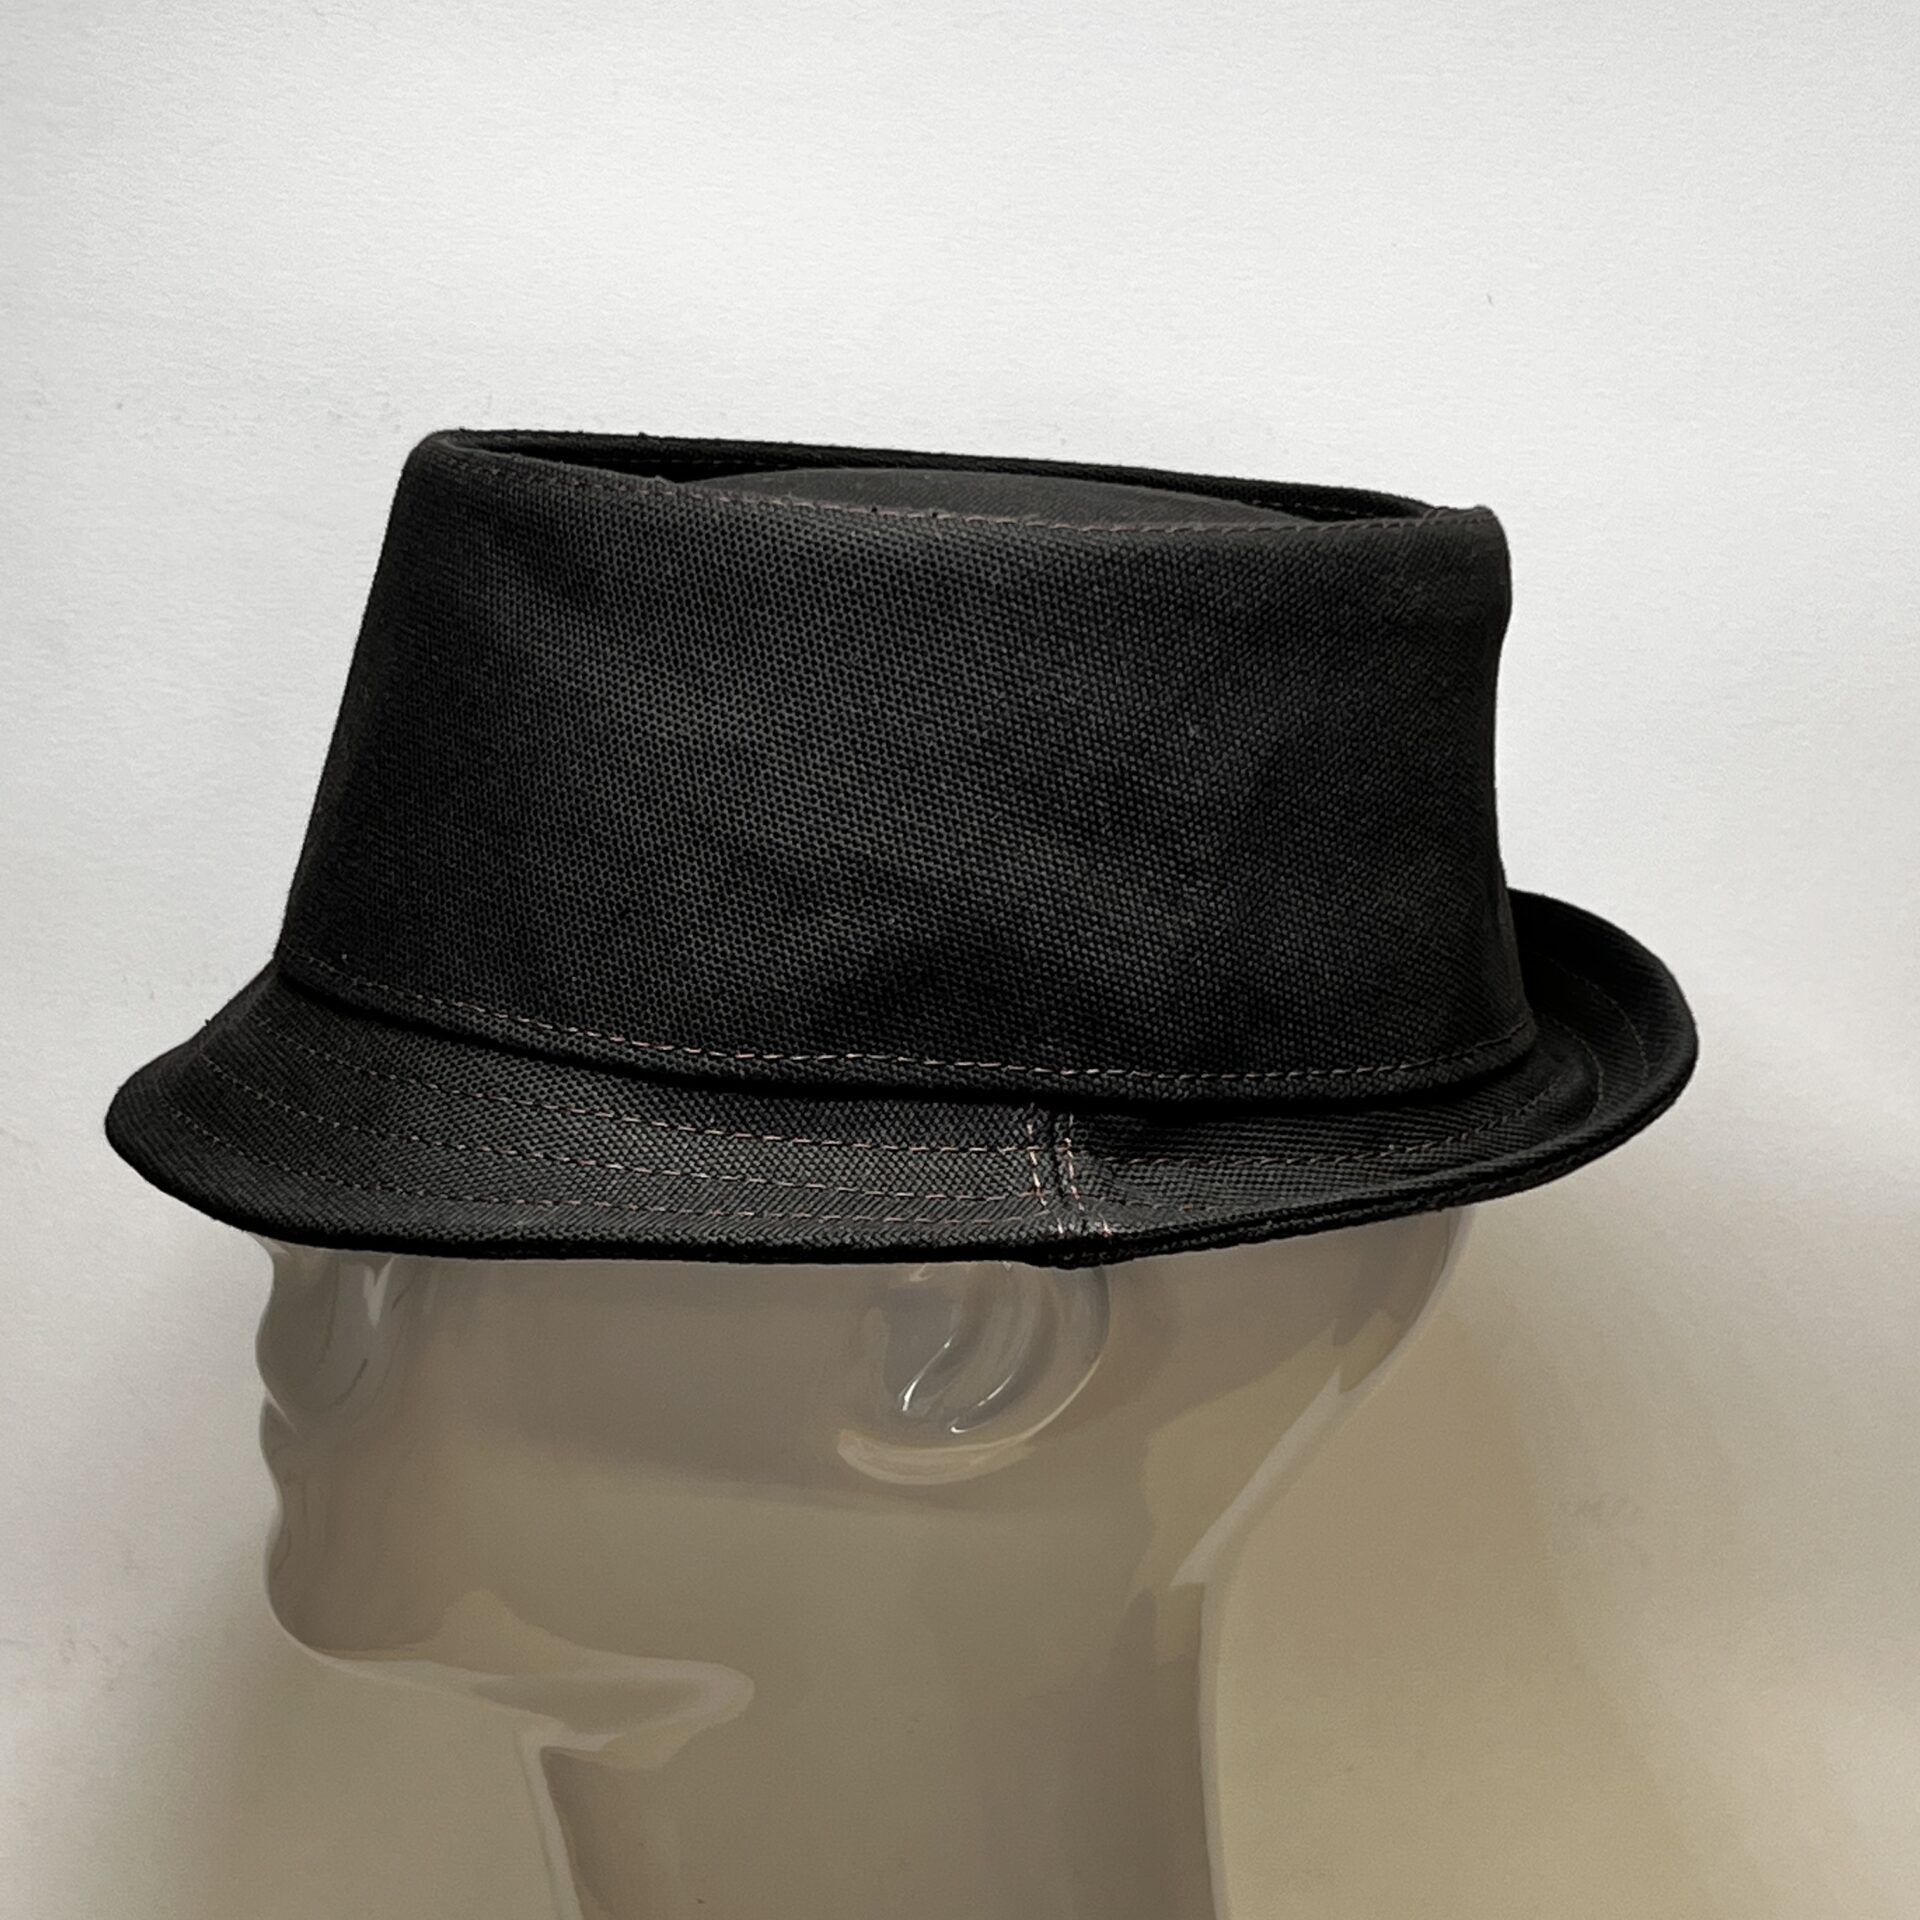 Pork pie hat canvas dark brown 60/61 cm